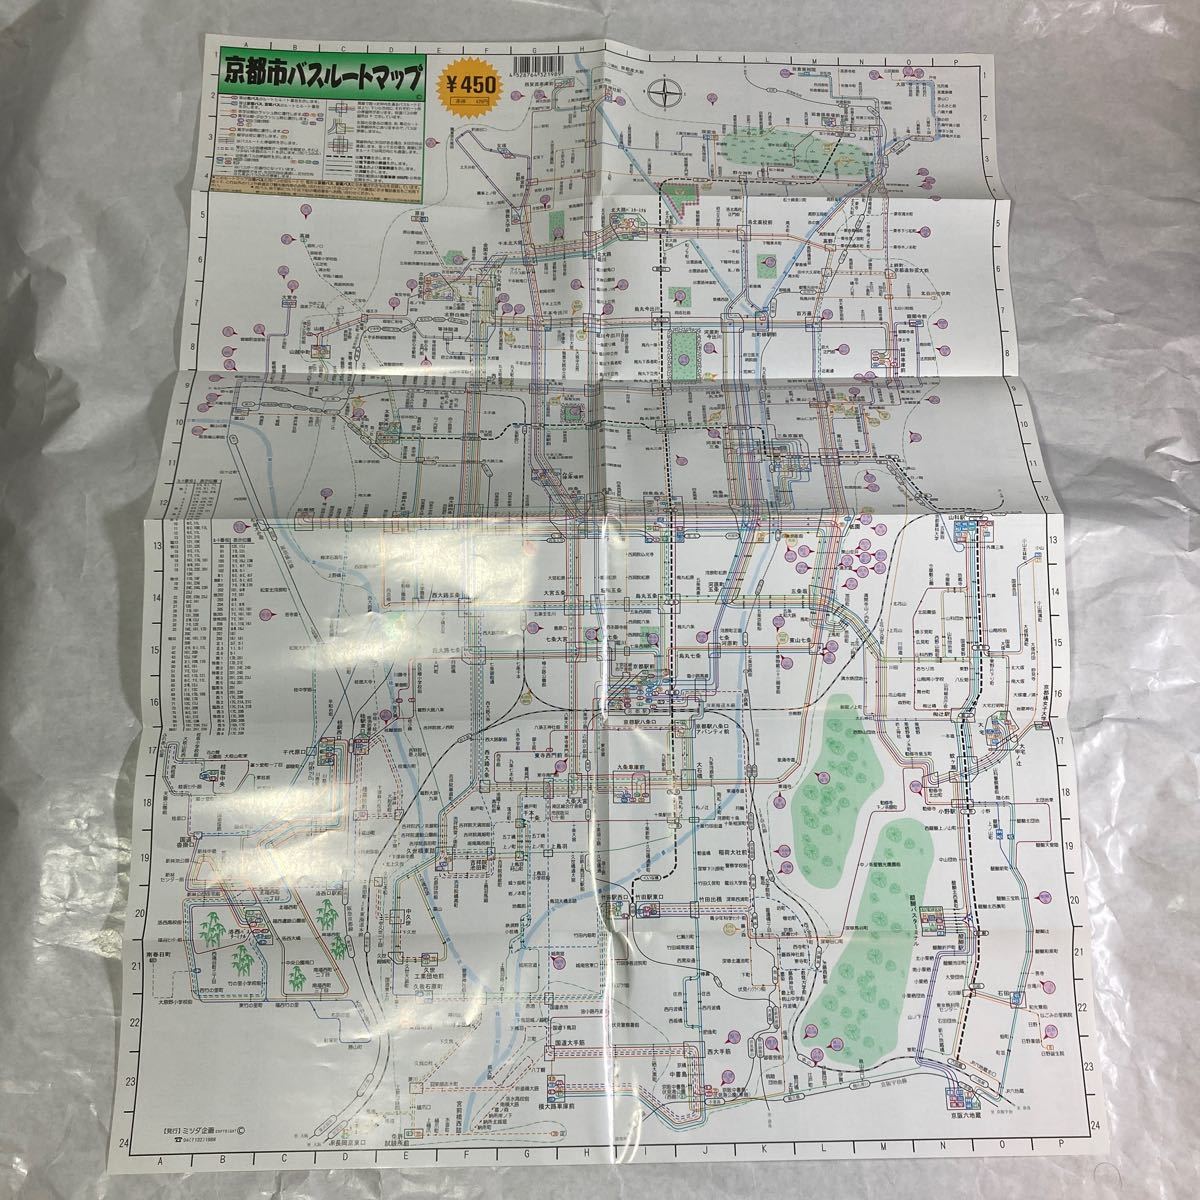 京都市バスルートマップ お宝 地図 昔の地図 資料文献 研究素材 路線 電車の画像3